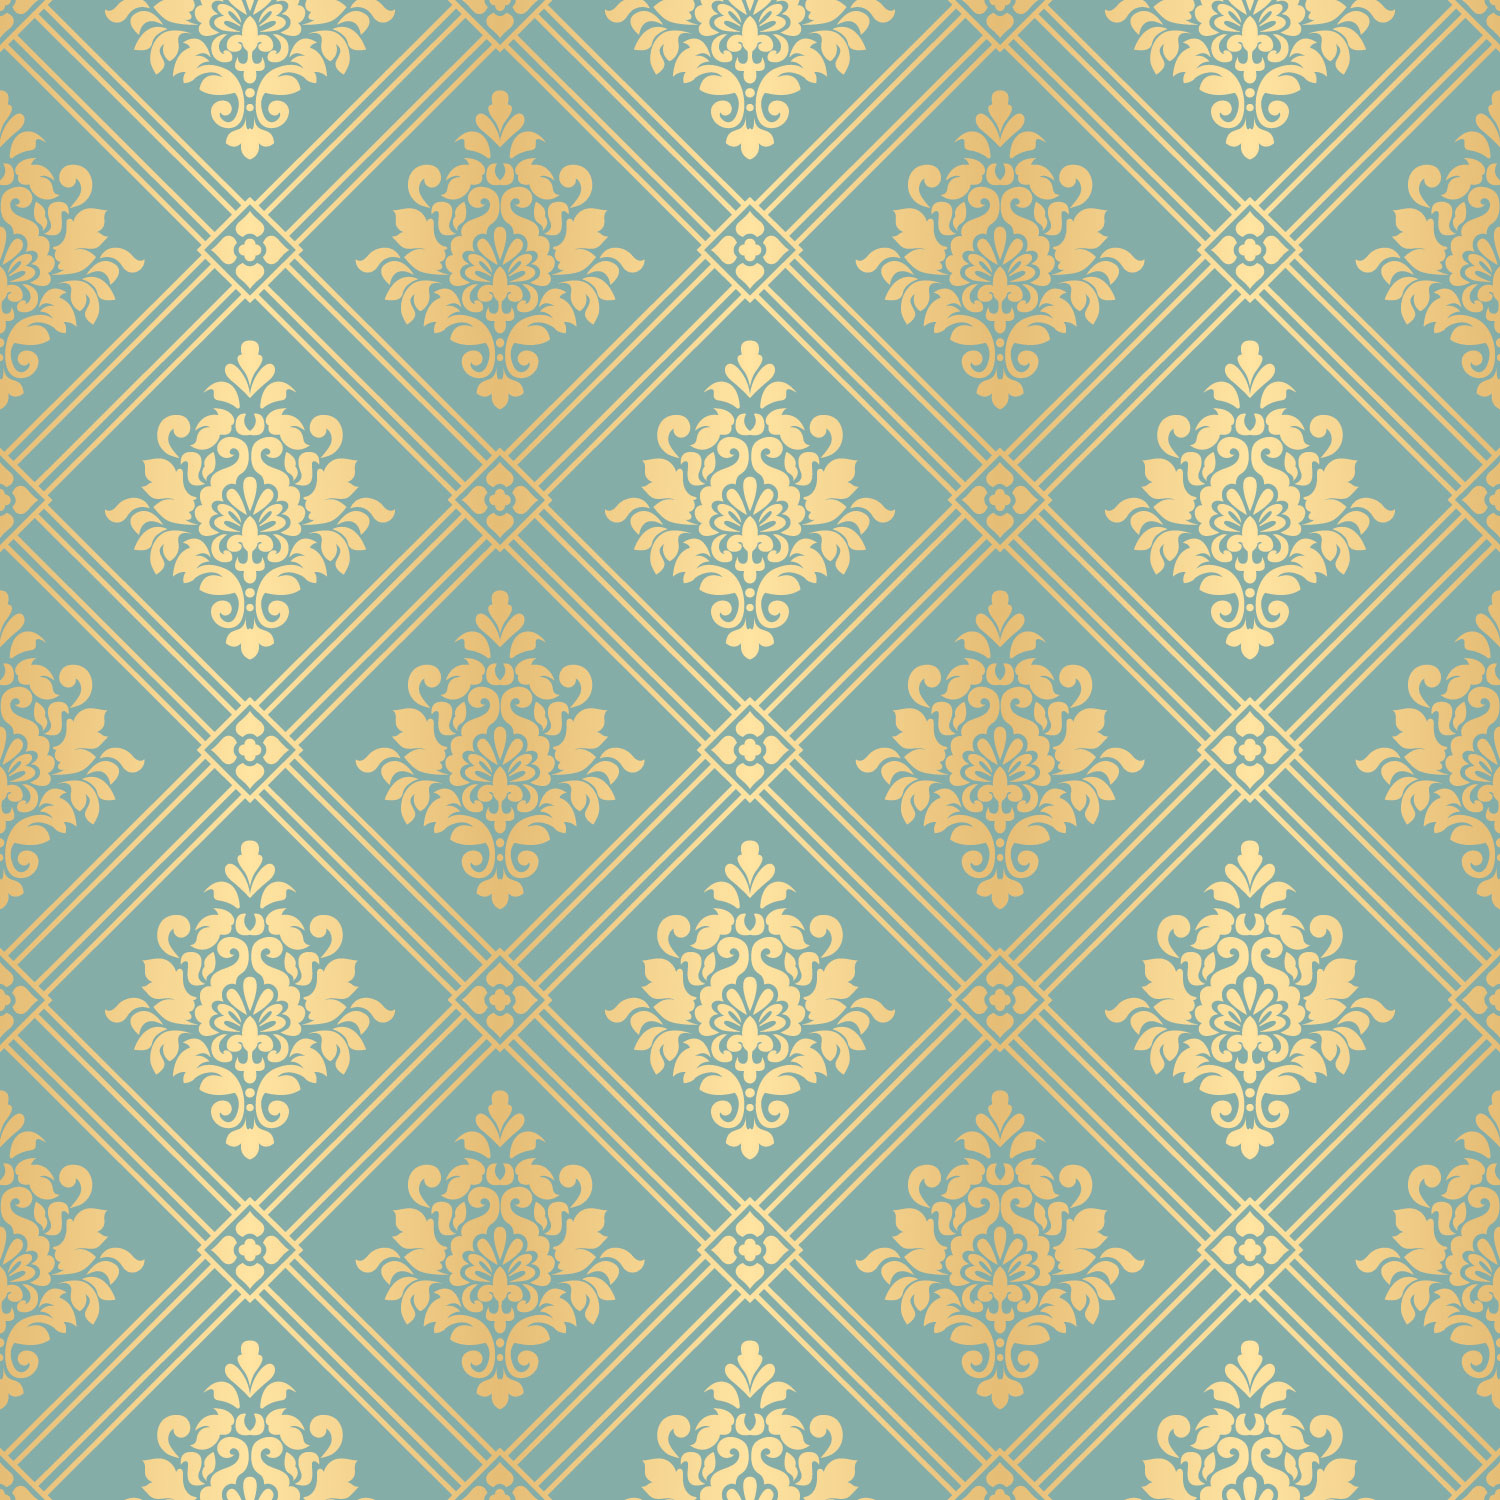 Royal Pattern - Royal Wall Pattern - 1500x1500 Wallpaper 